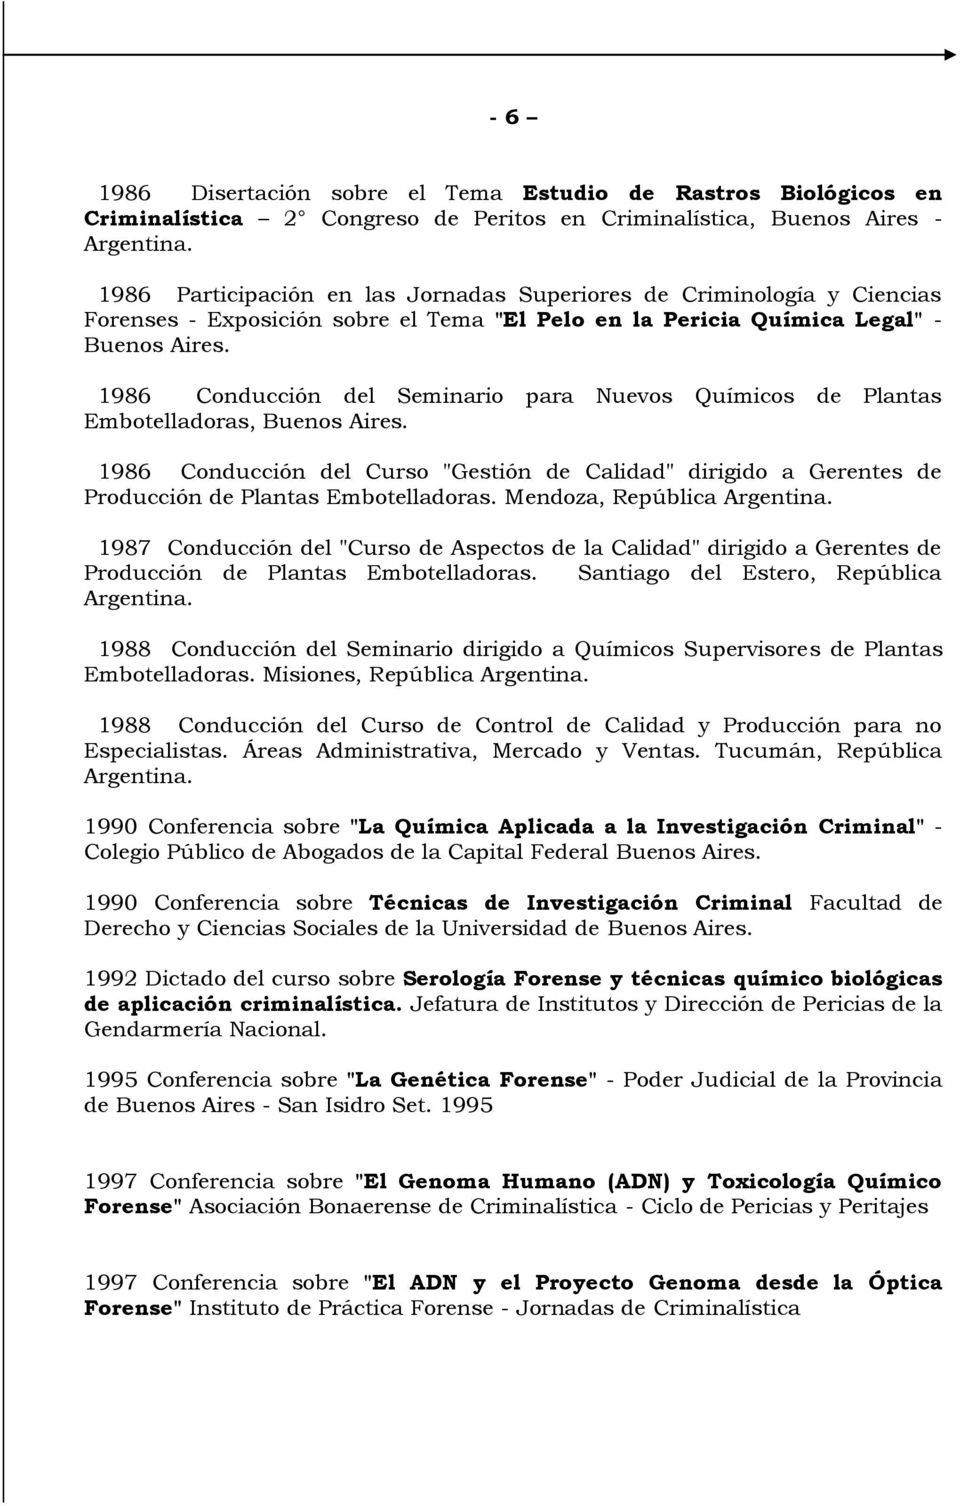 1986 Conducción del Seminario para Nuevos Químicos de Plantas Embotelladoras, Buenos Aires. 1986 Conducción del Curso "Gestión de Calidad" dirigido a Gerentes de Producción de Plantas Embotelladoras.